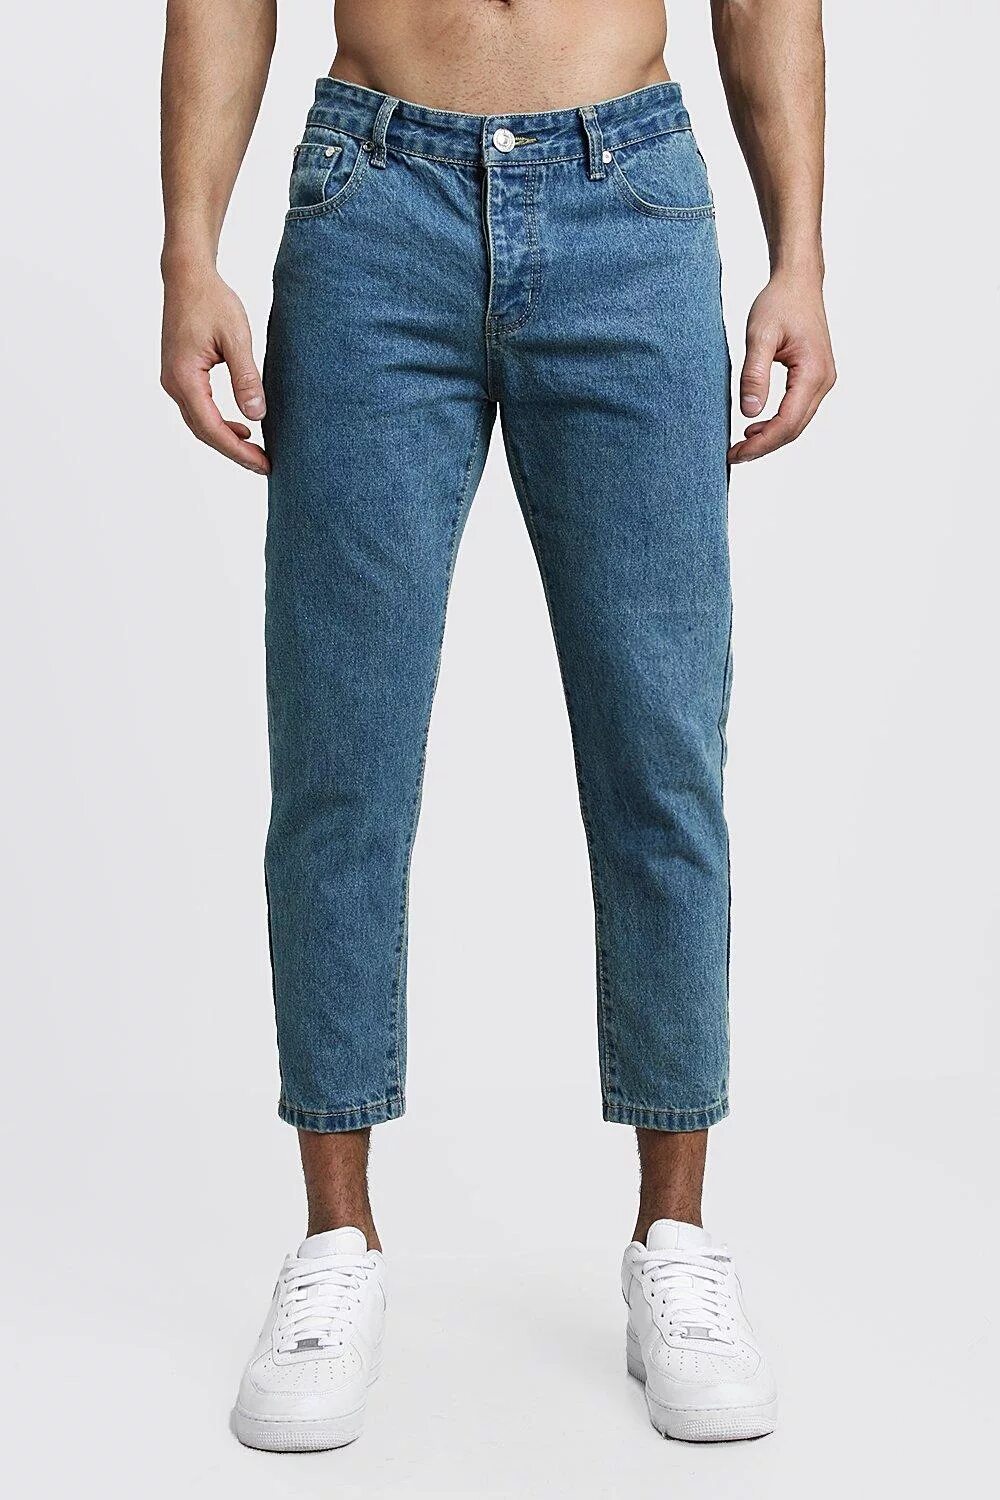 Купить укороченную мужскую. Slim Cropped джинсы мужские. Slim skinny straight джинсы. Джинсы мужские skinny Cropped. Широкие укороченные джинсы мужские.